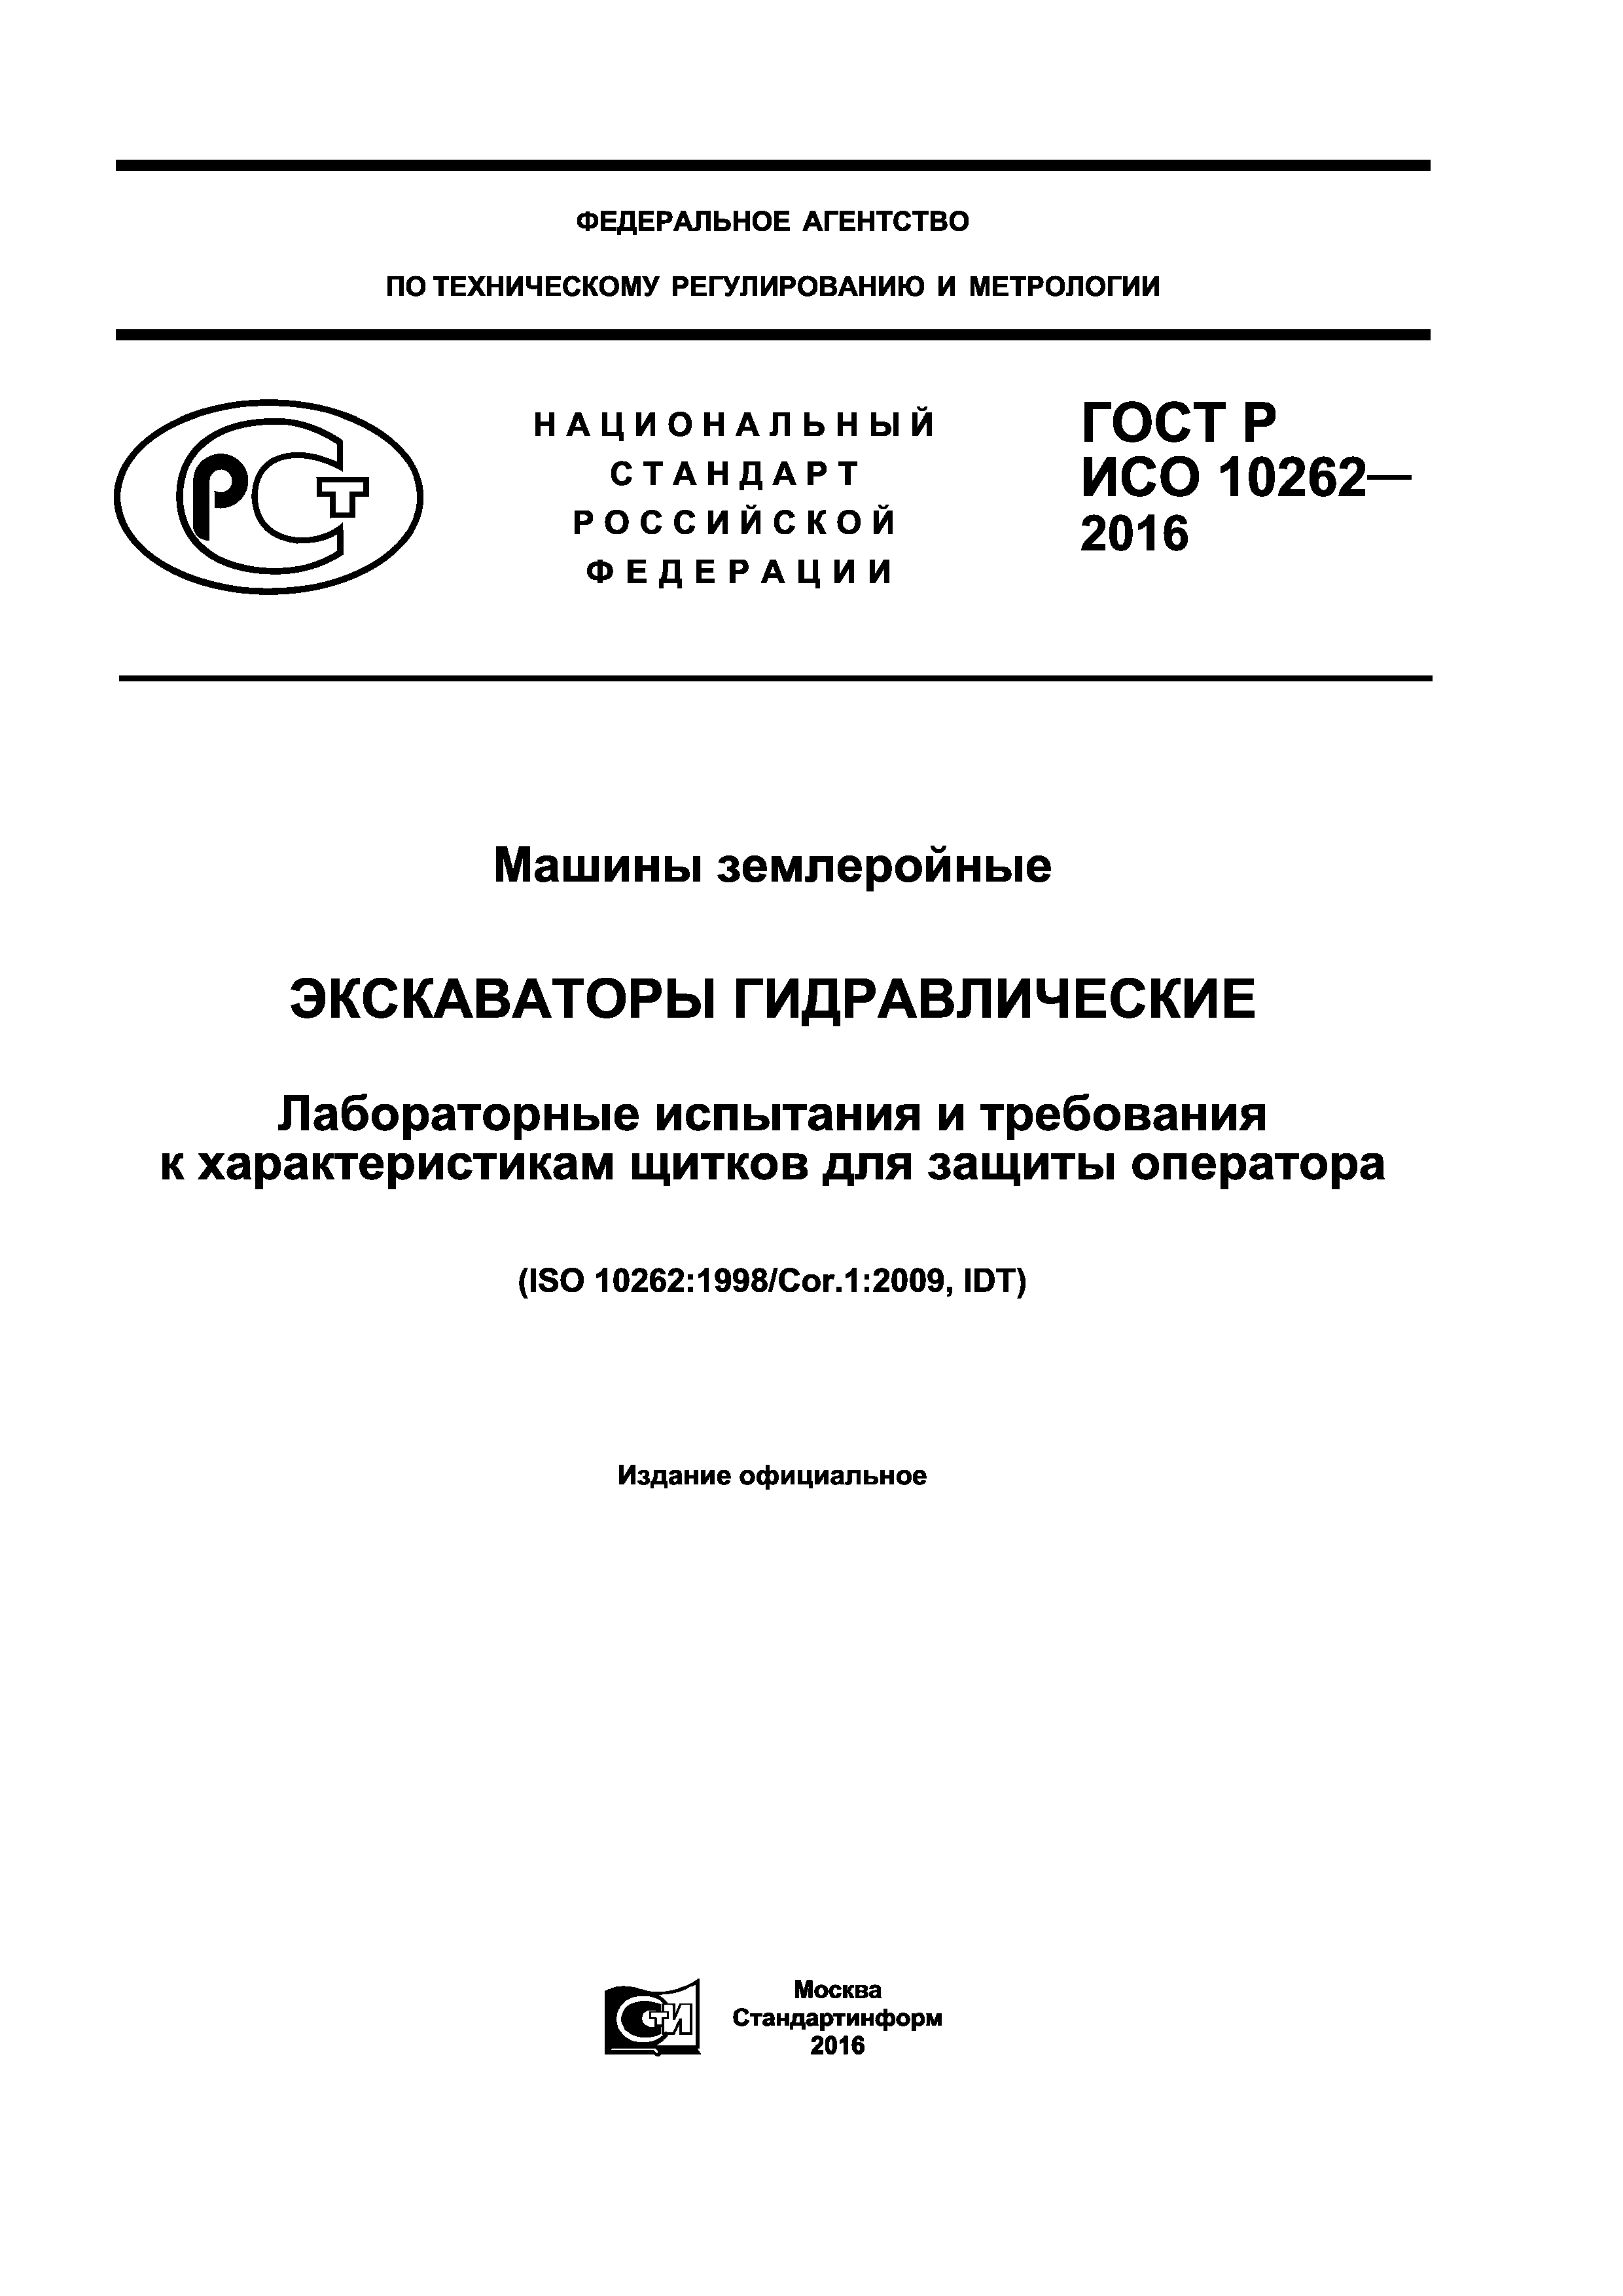 ГОСТ Р ИСО 10262-2016